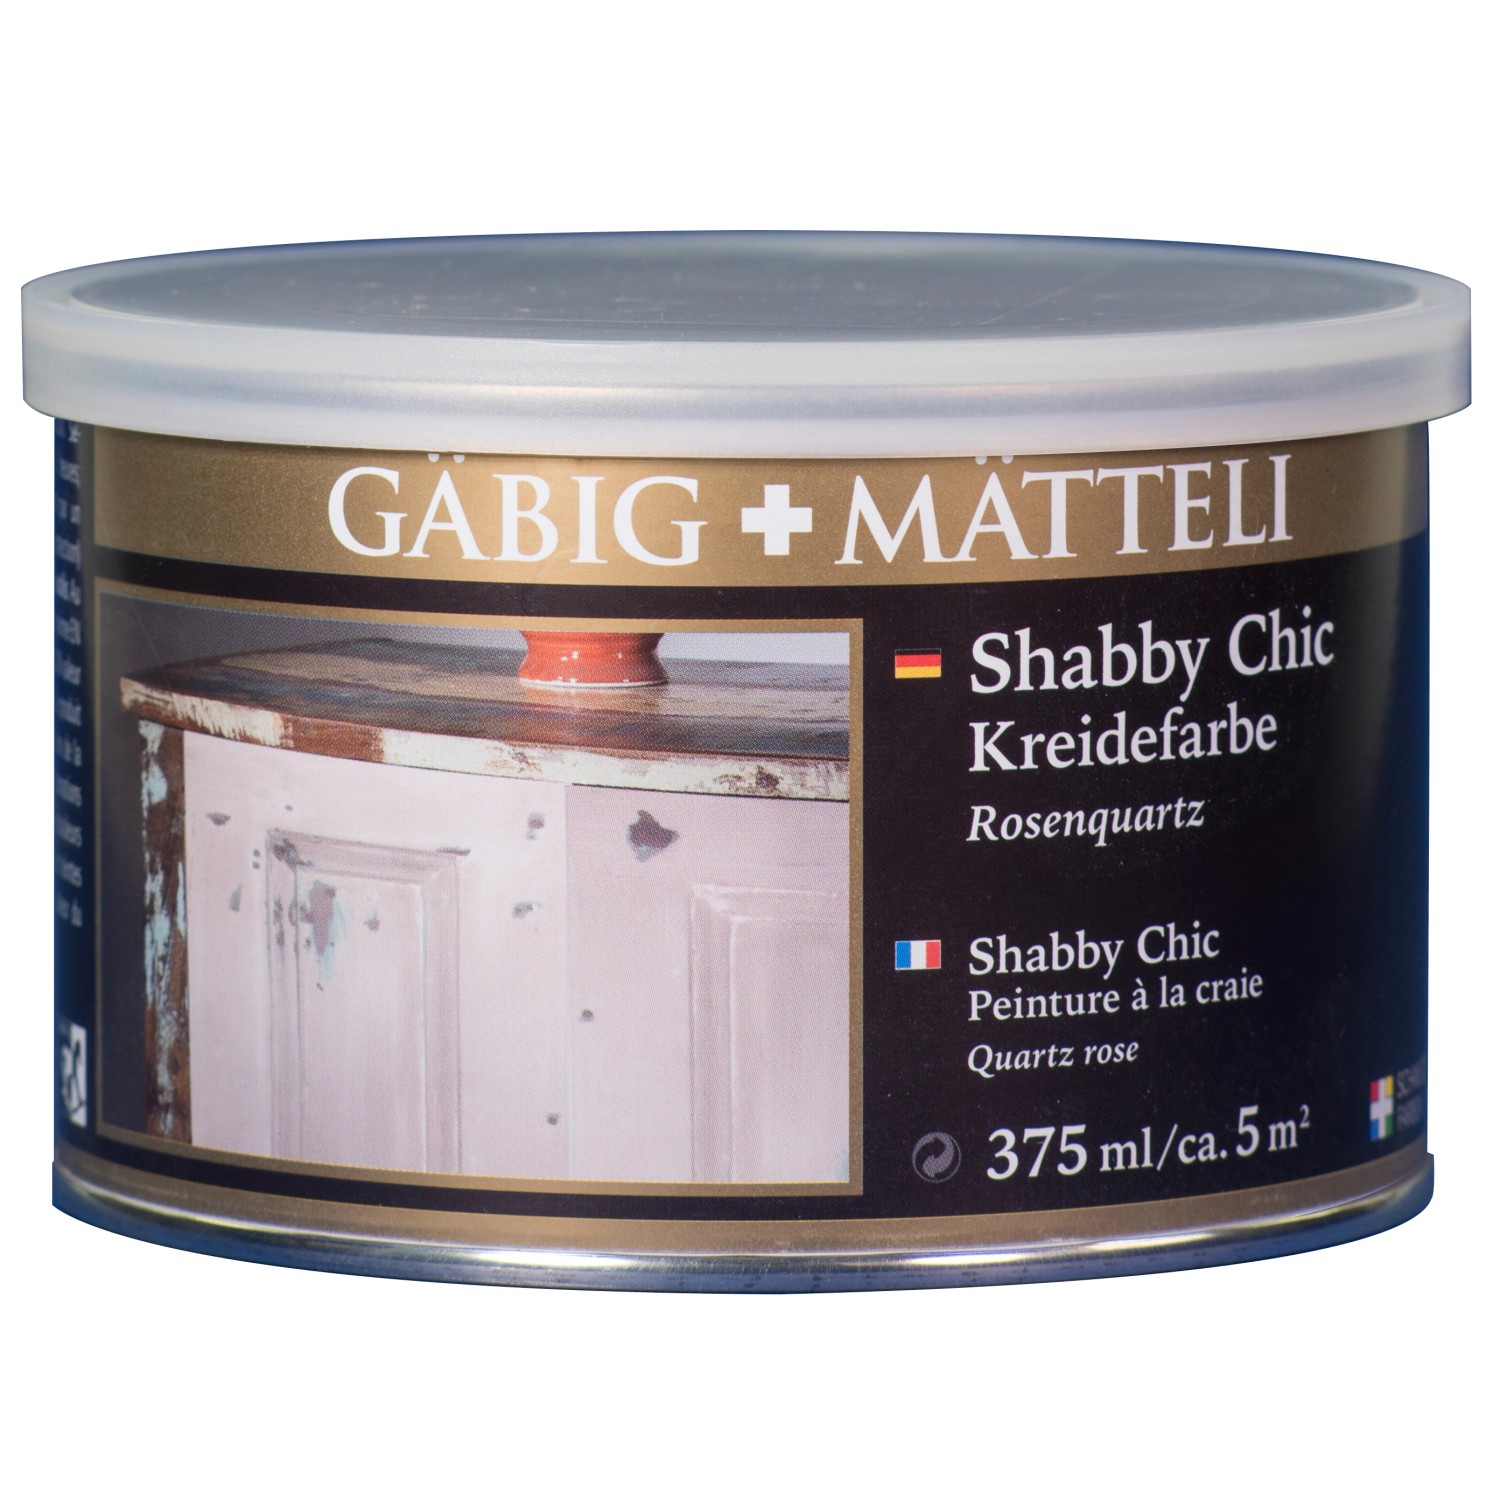 Gäbig+Mätteli Shabby Chic Kreidefarbe Rosenquarz matt 375 ml von Gäbig+Mätteli